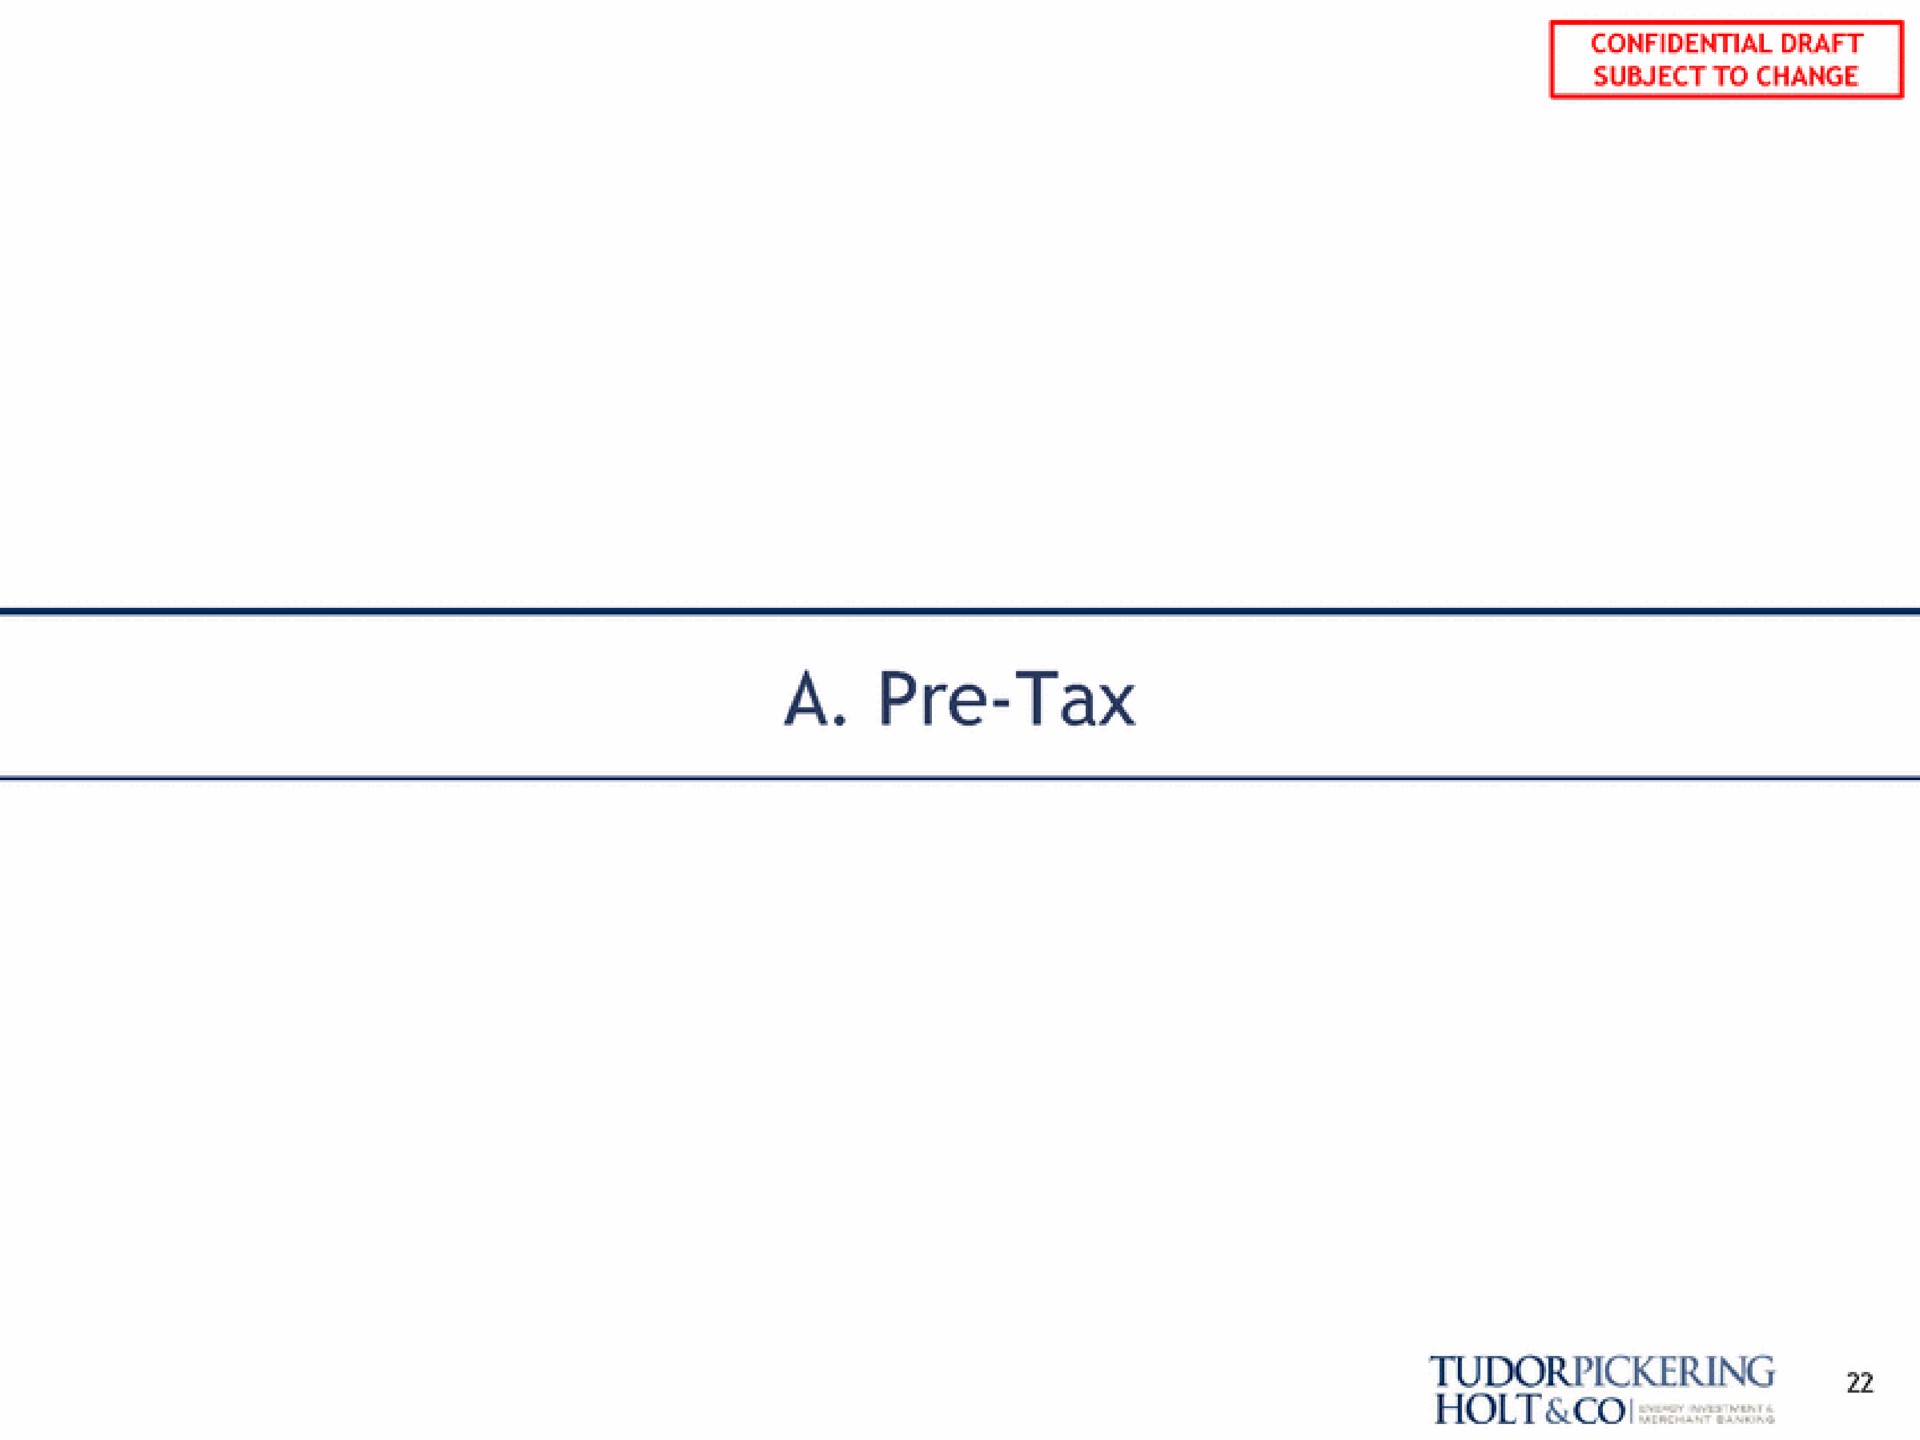 a tax | Tudor, Pickering, Holt & Co